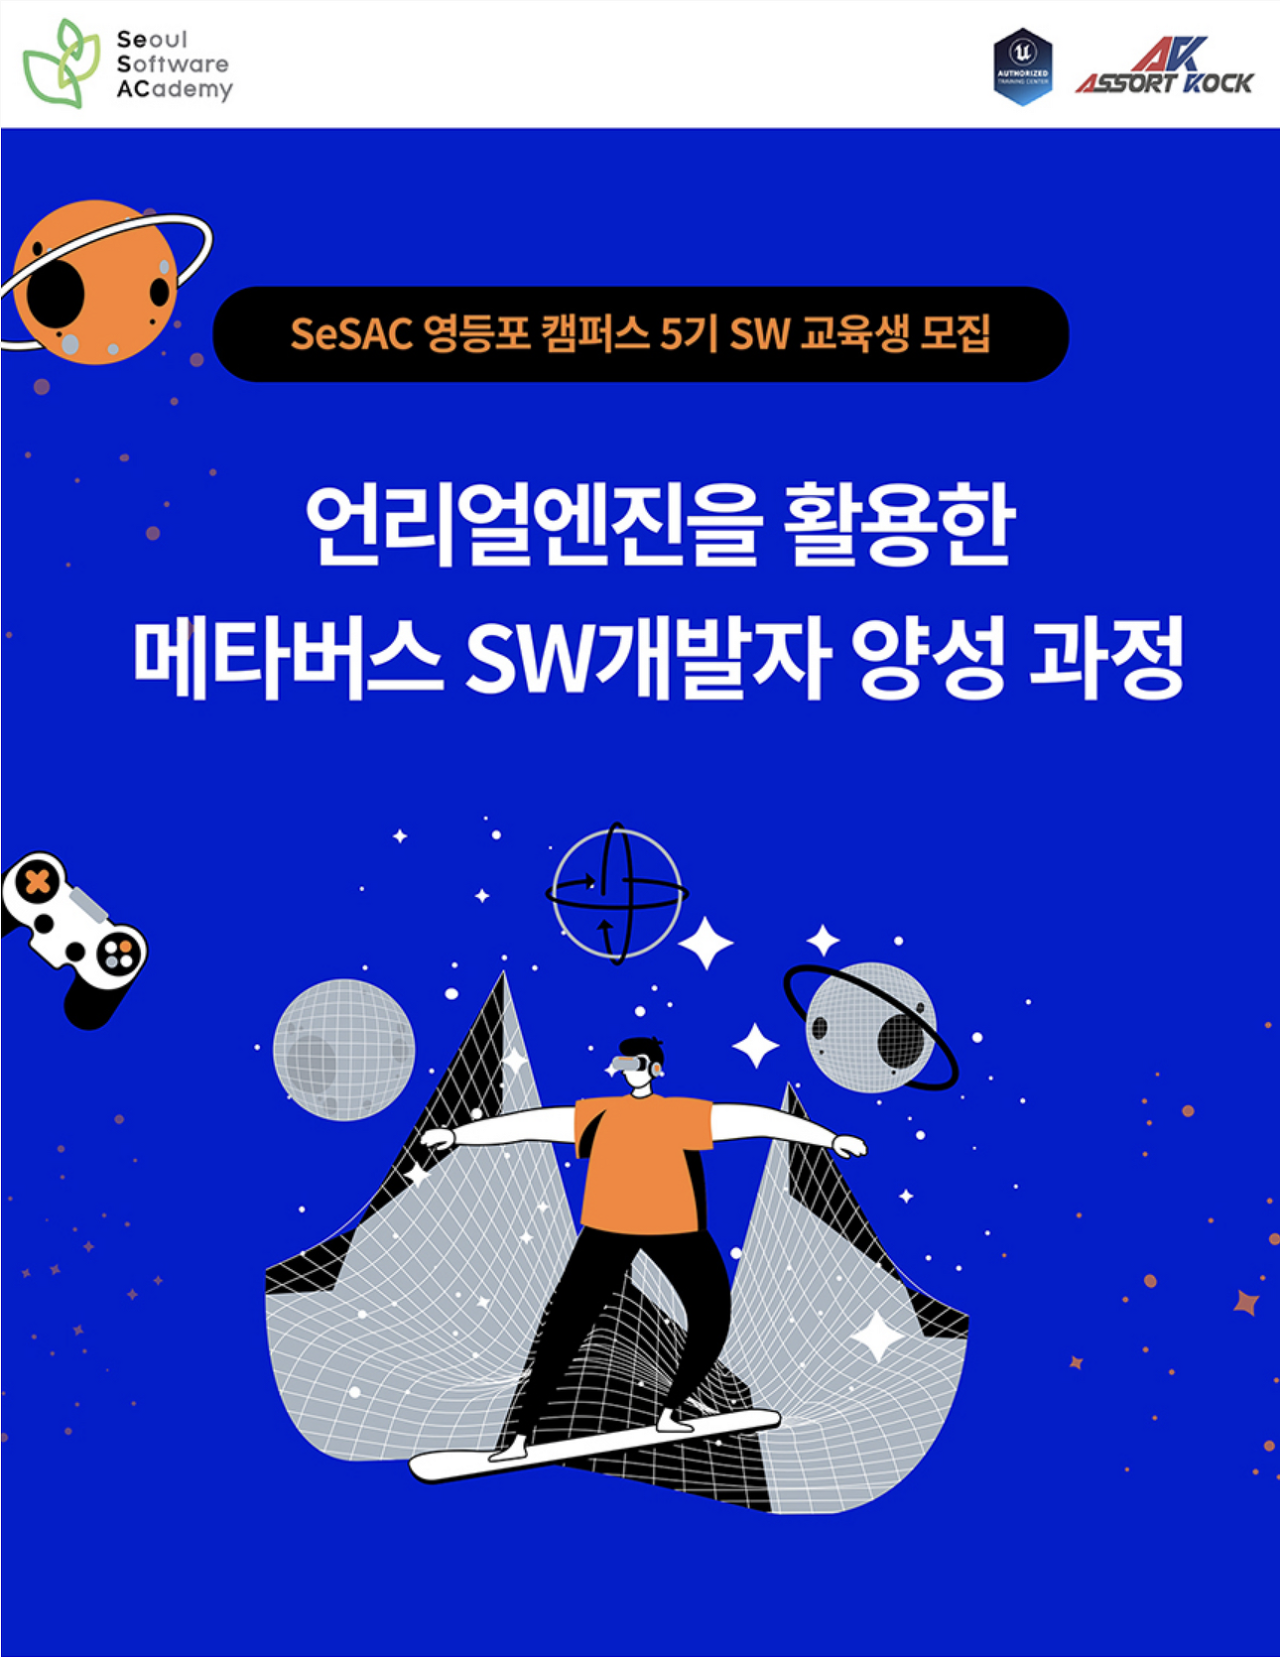 메타버스 언리얼엔진 개발자 양성과정! 무료 취업 교육 영등포캠퍼스 5기